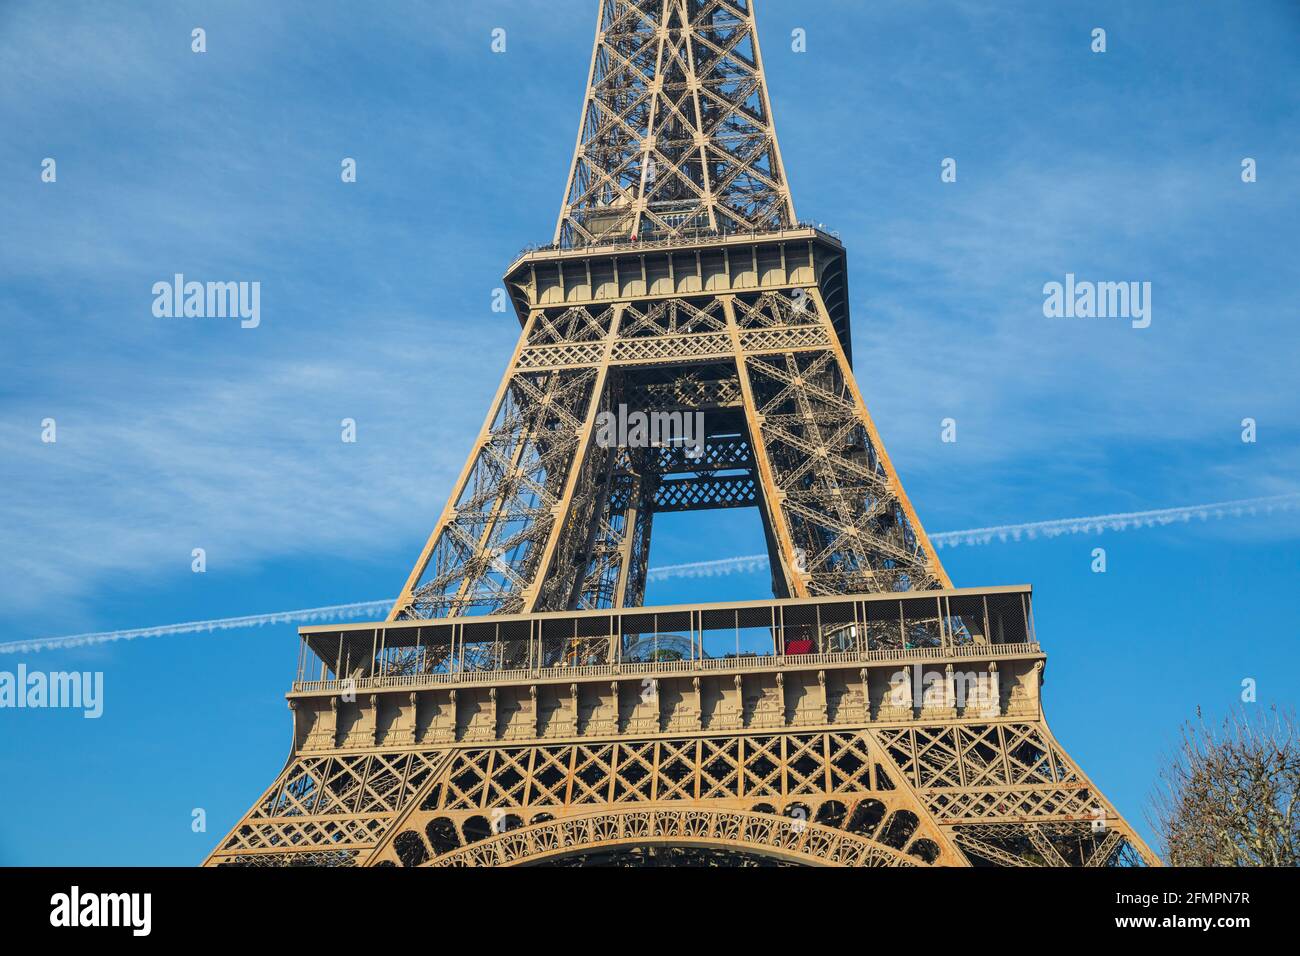 The Eiffel Tower (La tour Eiffel), Paris, France. Stock Photo